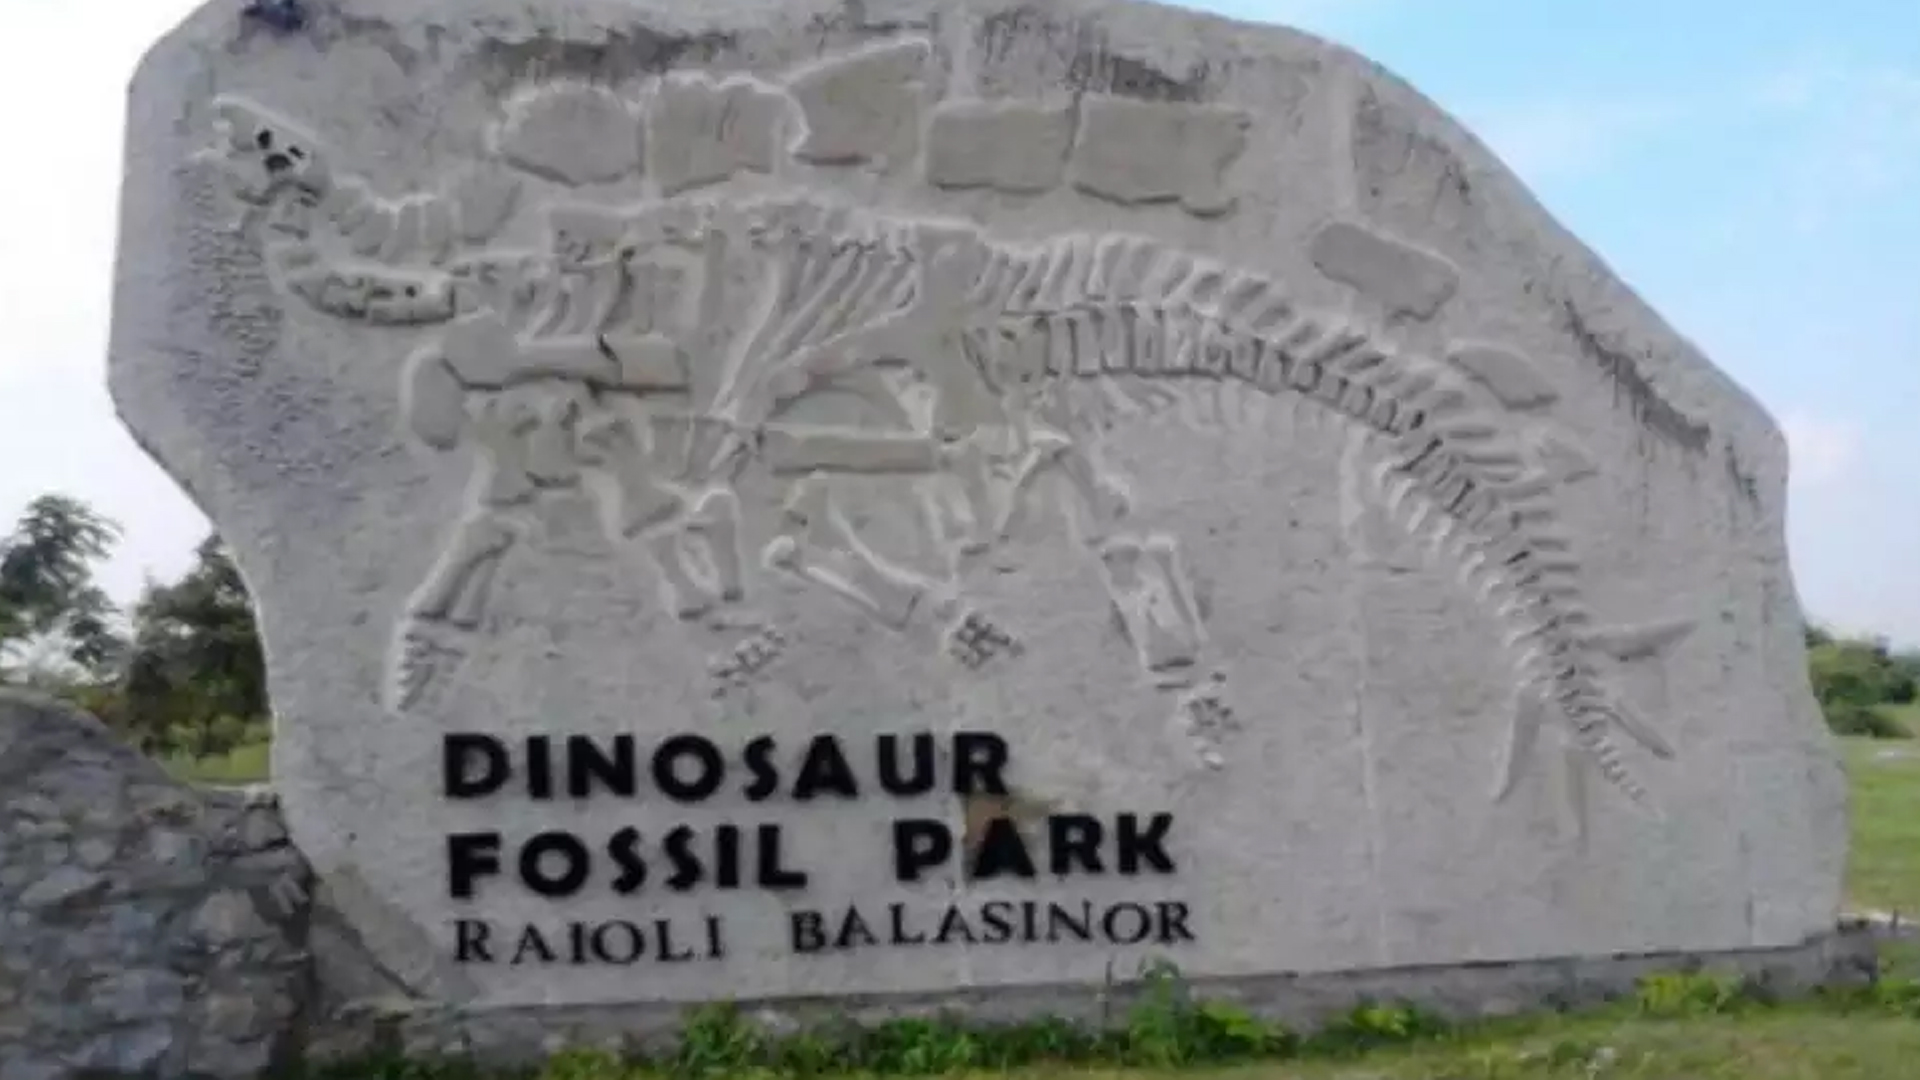 Dinosaur Fossil Park